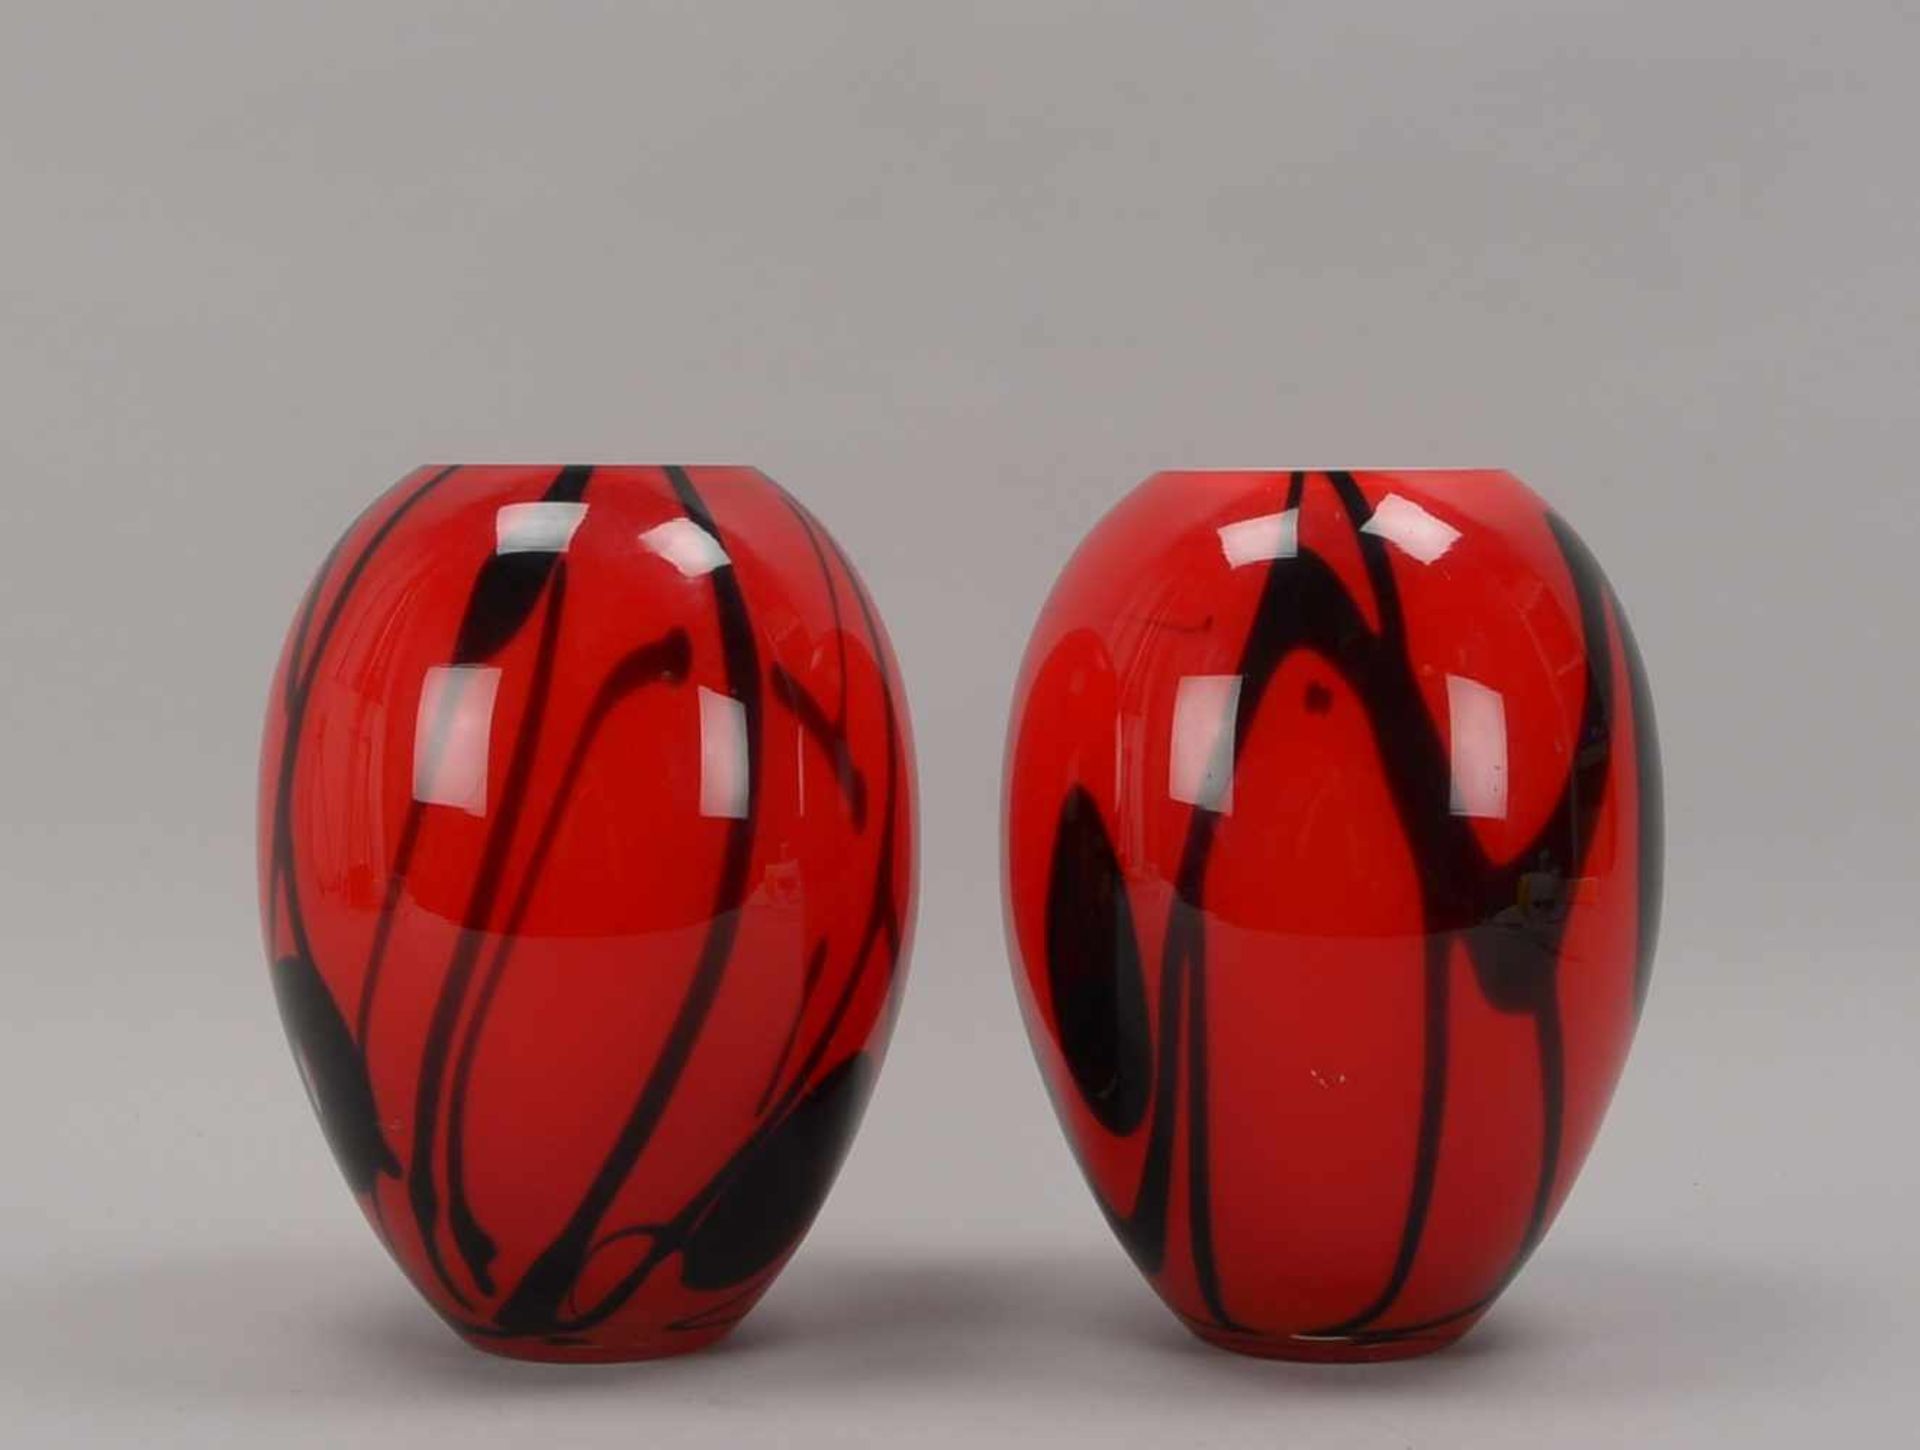 Paar Designer-Vasen, bauchiger Korpus aus starkem Glas, rot mit schwarzem Verlauf, Mündung